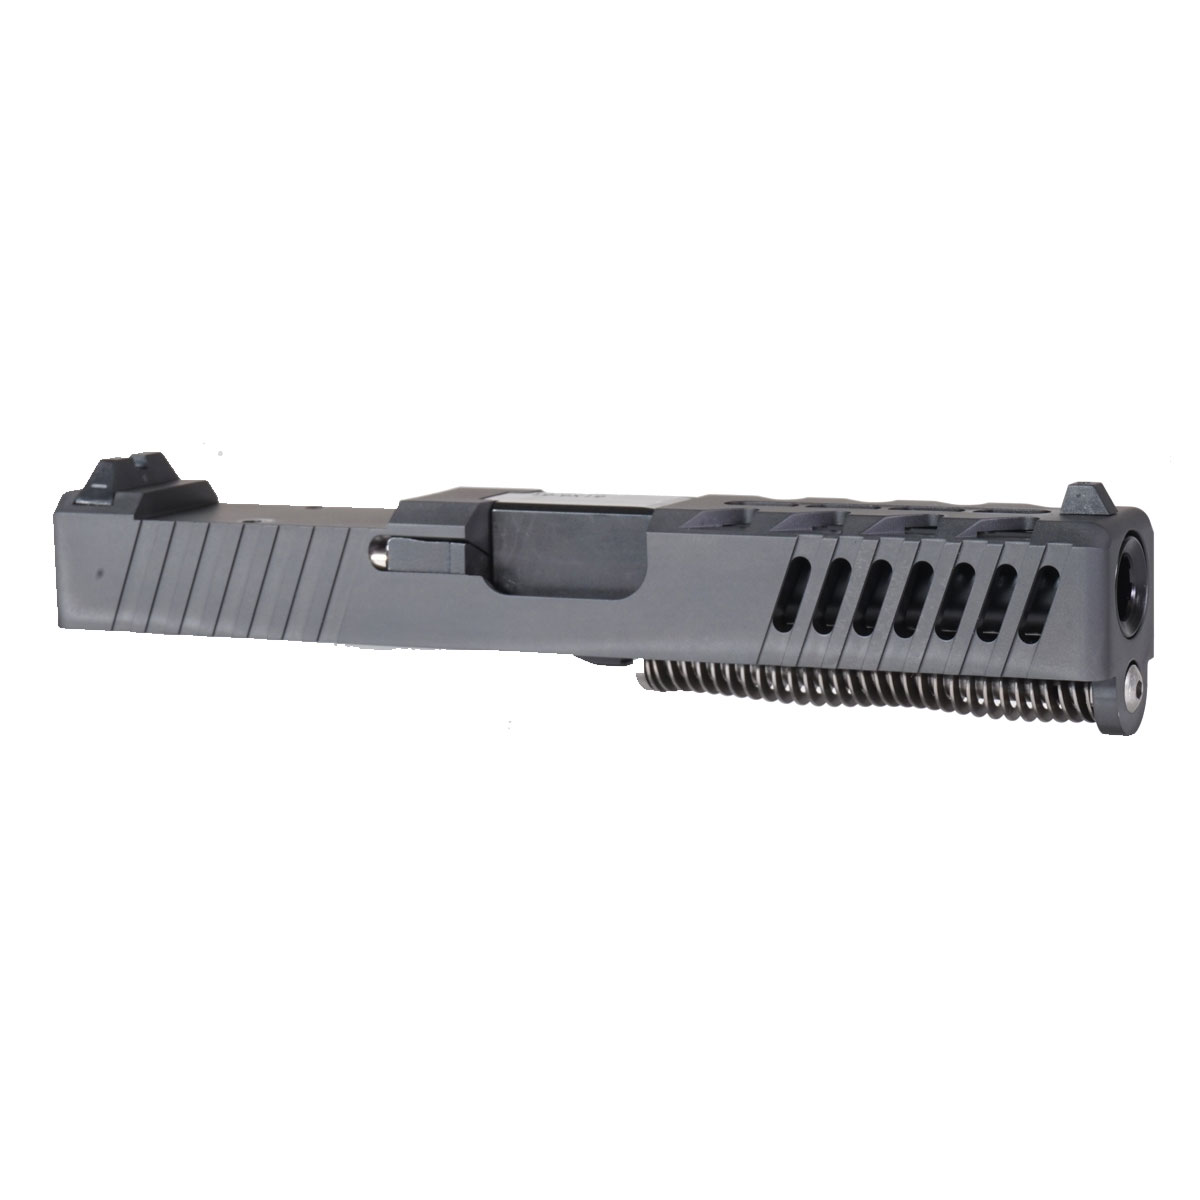 DTT 'The Rasmussen' 9mm Complete Slide Kit - Glock 19 Gen 1-3 Compatible